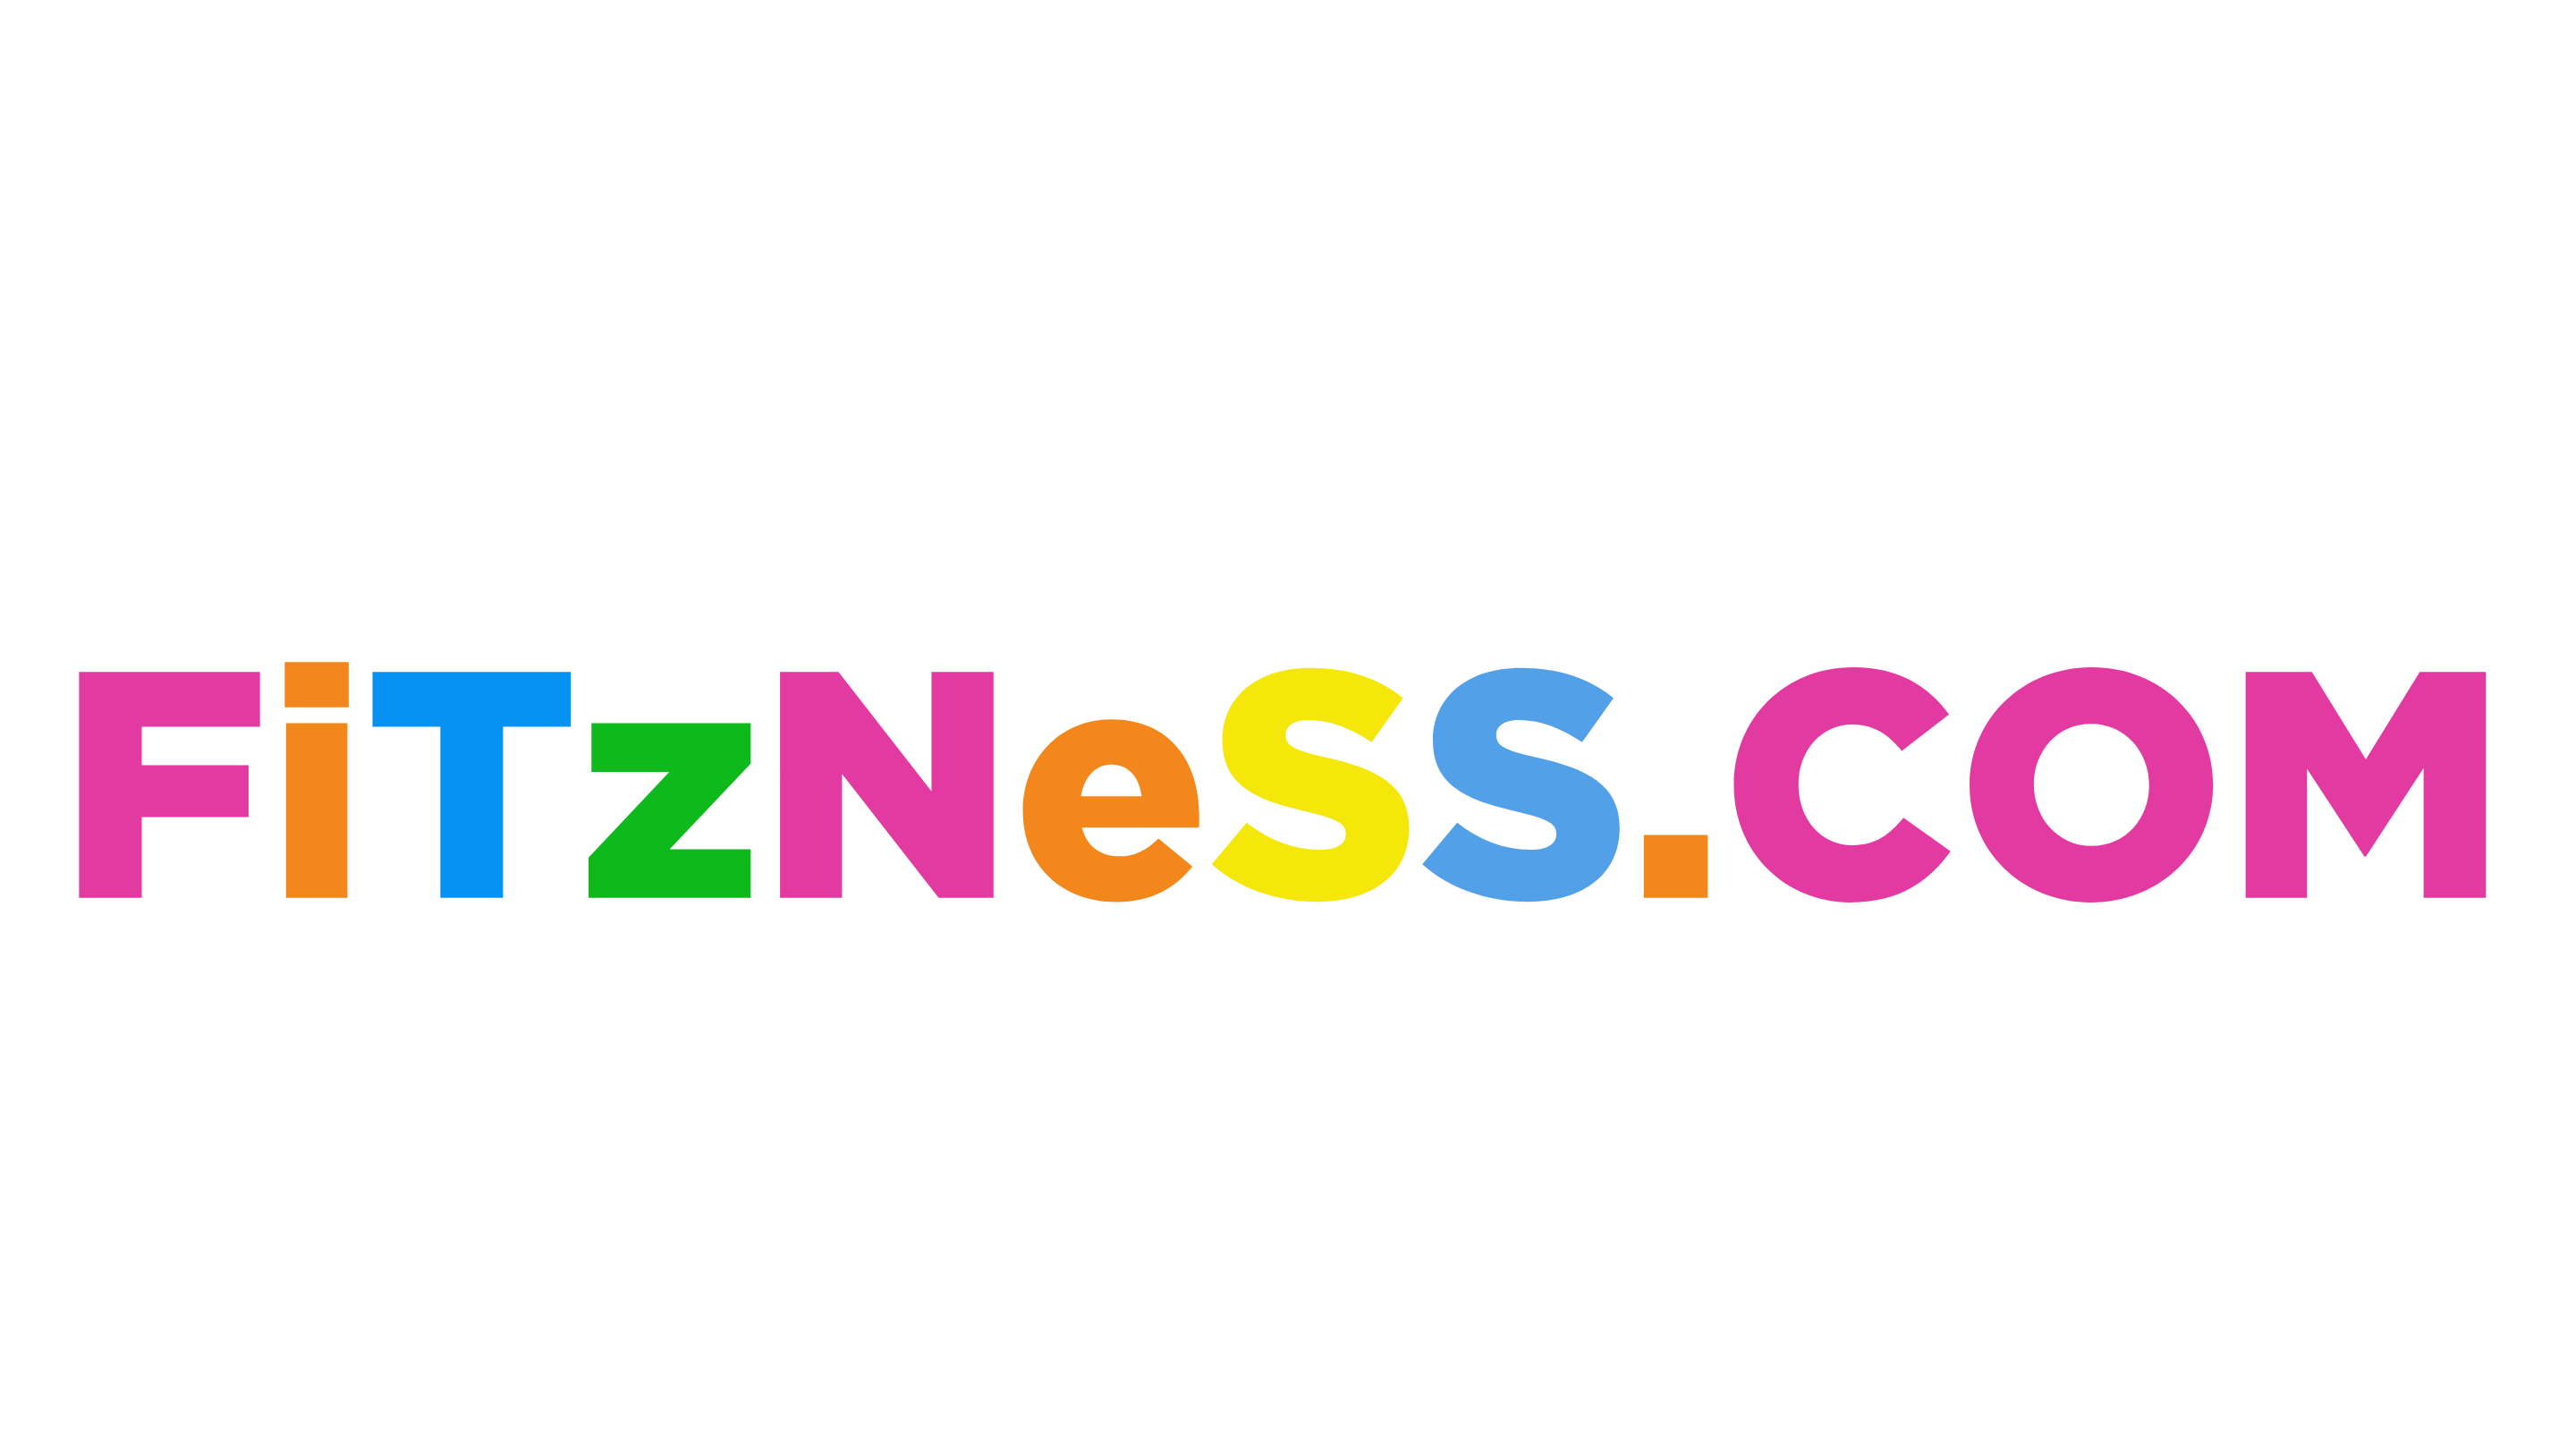 Fitzness.com